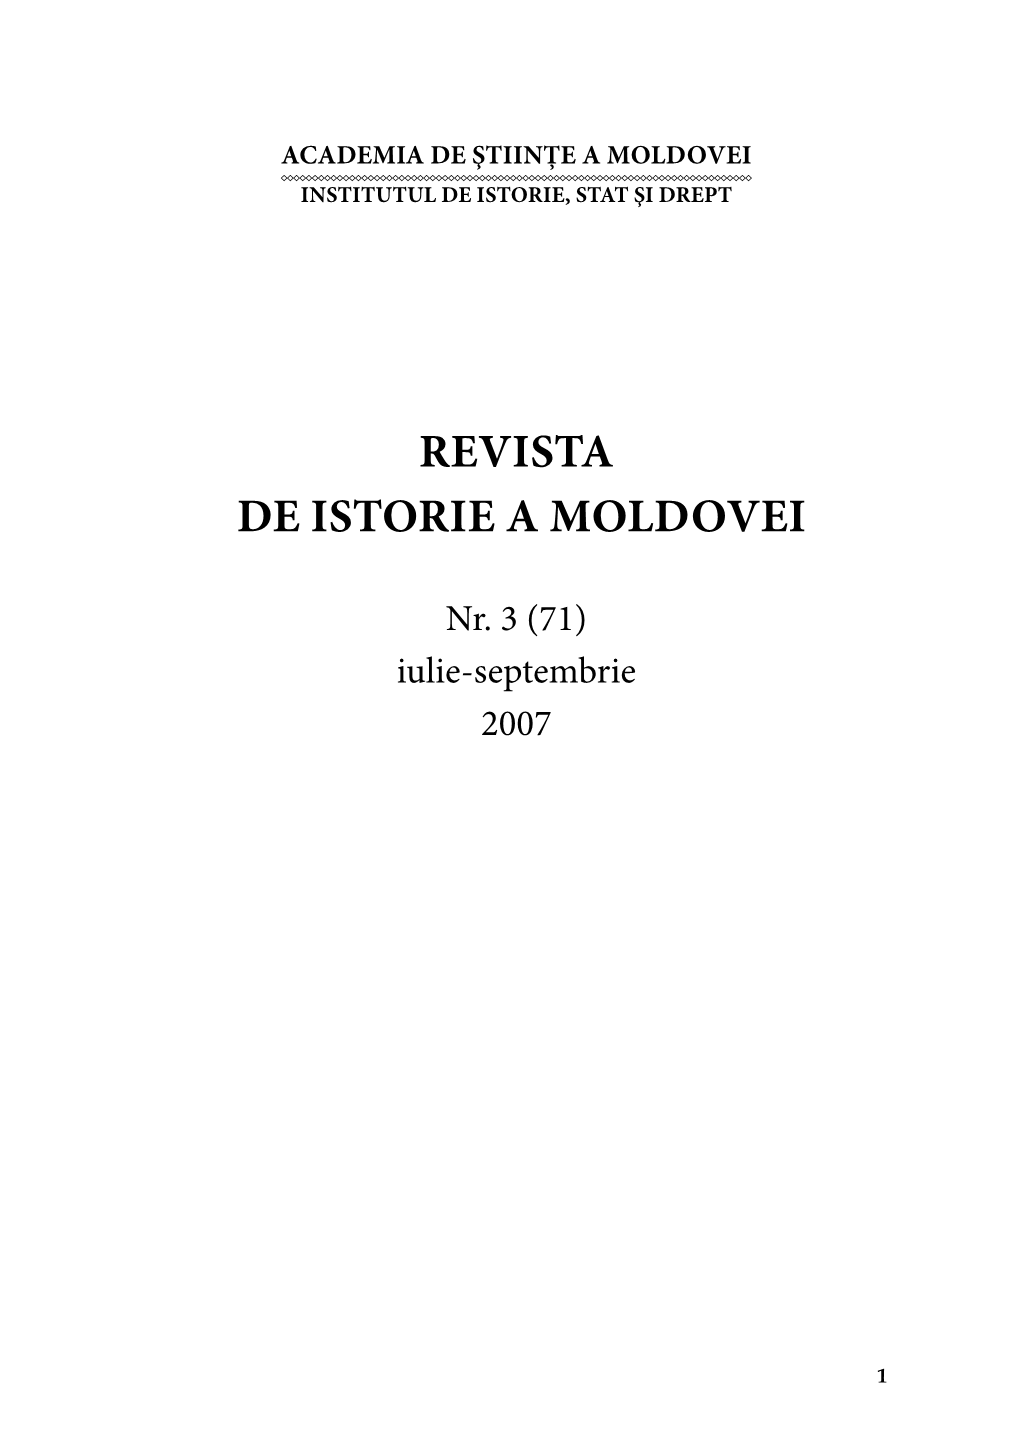 Revista De Istorie a Moldovei